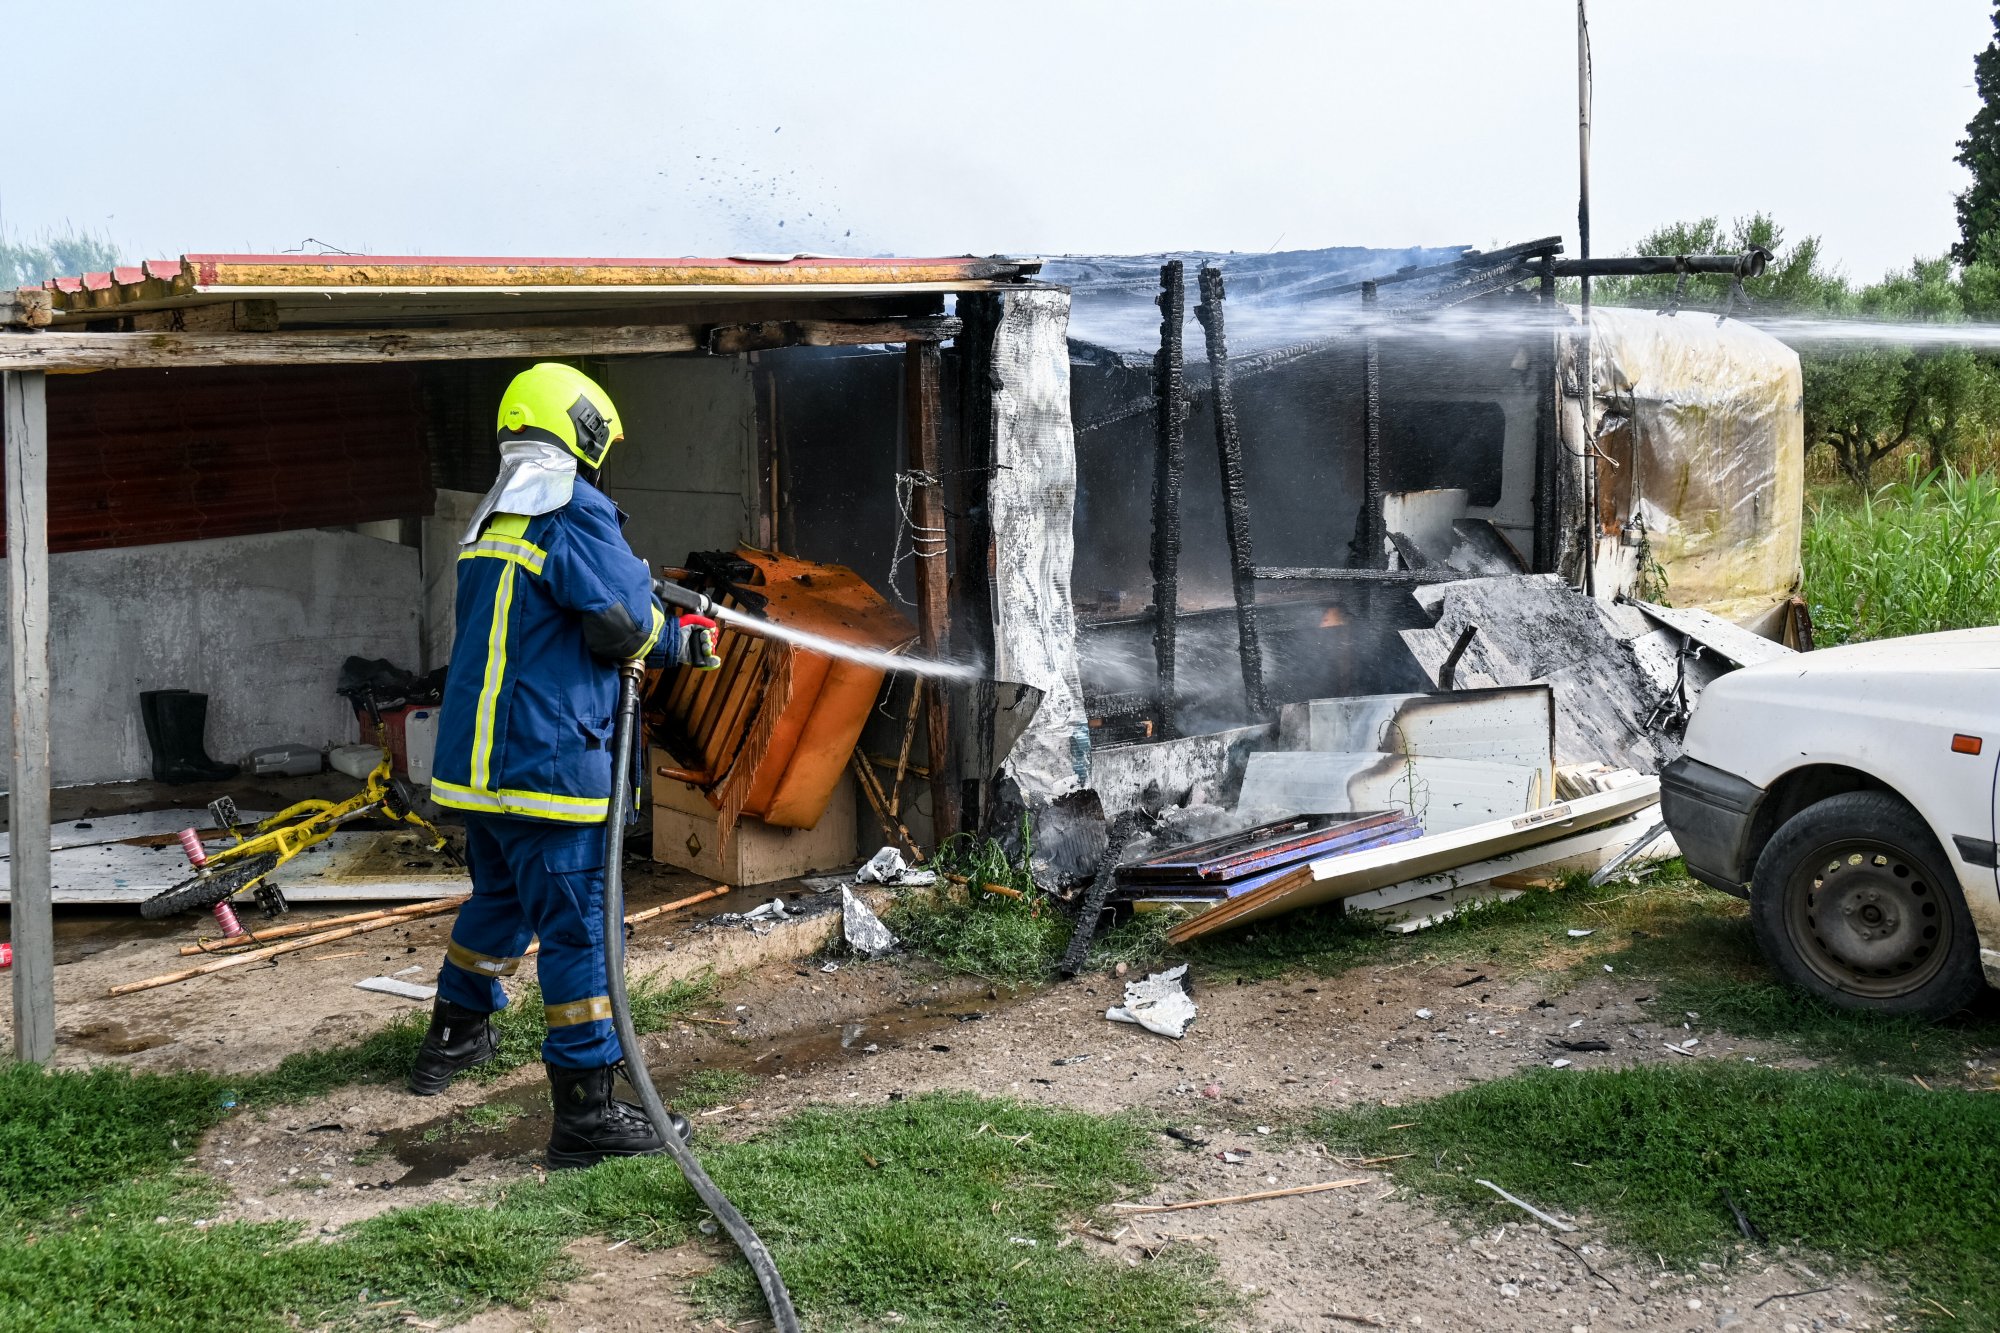 Ηλεία: Έκαψαν το σπίτι του 37χρονου που σκότωσε την 11χρονη - Φόβοι για βεντέτα μεταξύ των οικογενειών